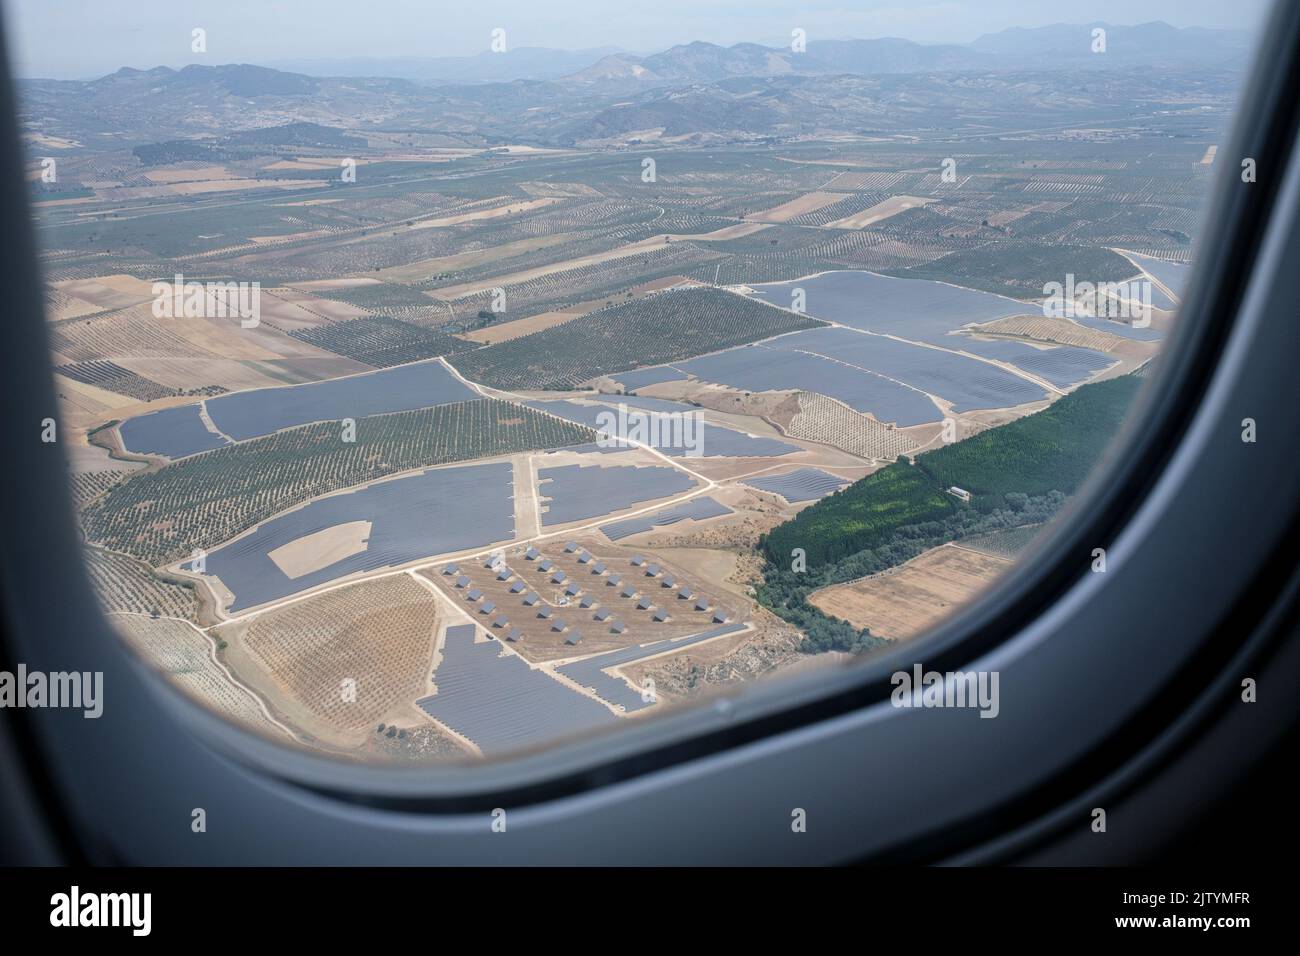 Panneaux solaires photovoltaïques d'en haut en voyageant en avion de Madrid à grenade, à bord d'un avion Bombardier CRJ1000, en Espagne Banque D'Images